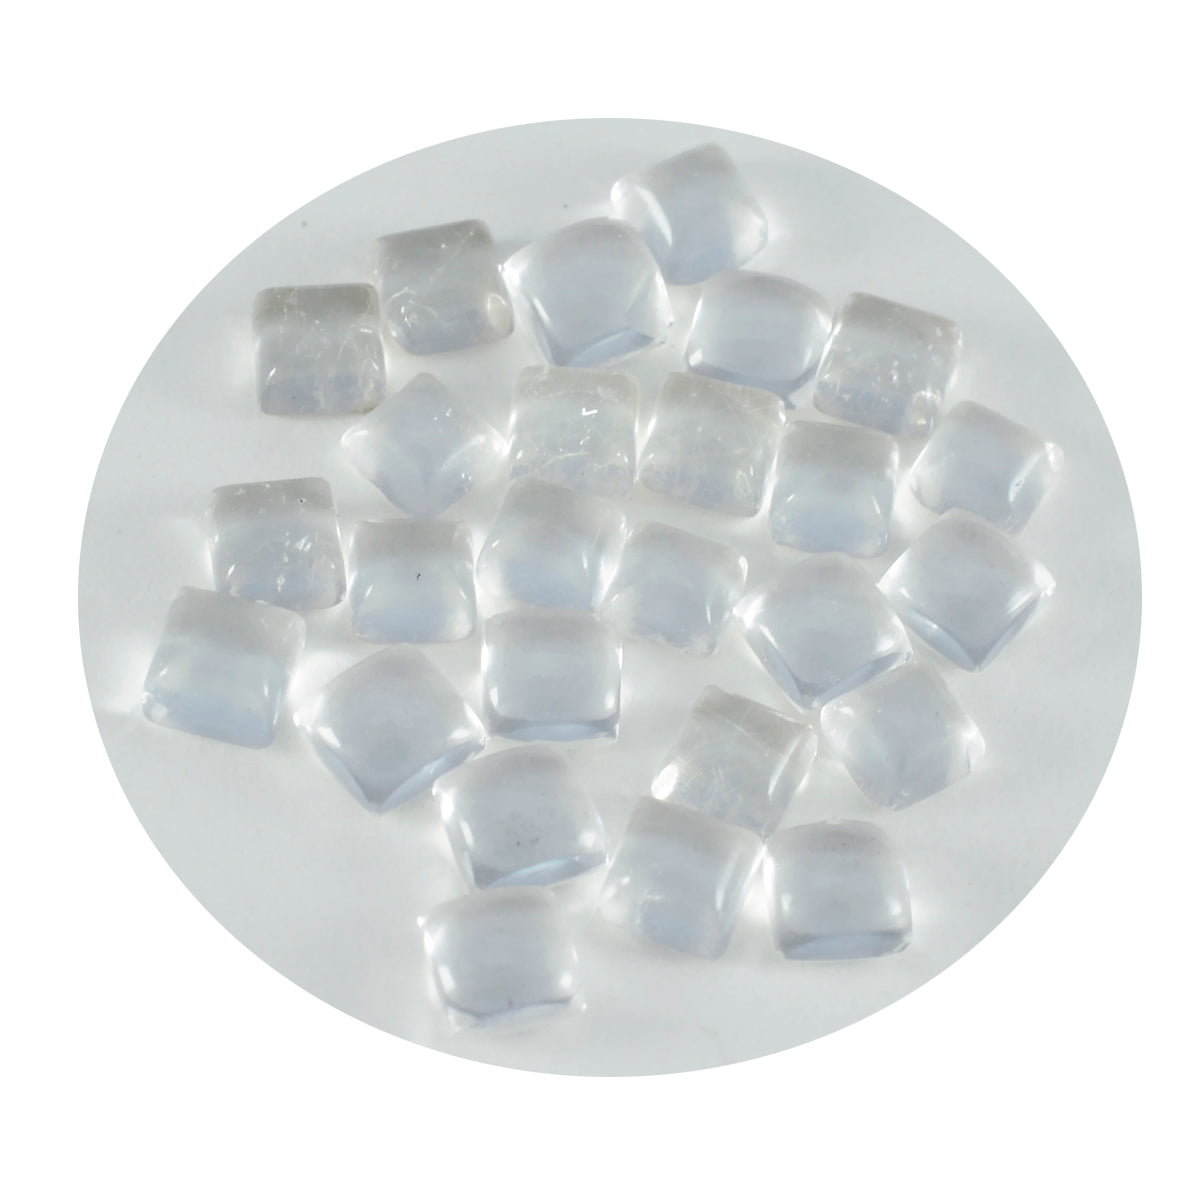 Riyogems – cabochon de quartz en cristal blanc, forme carrée, pierre d'excellente qualité, 6x6mm, 1 pièce